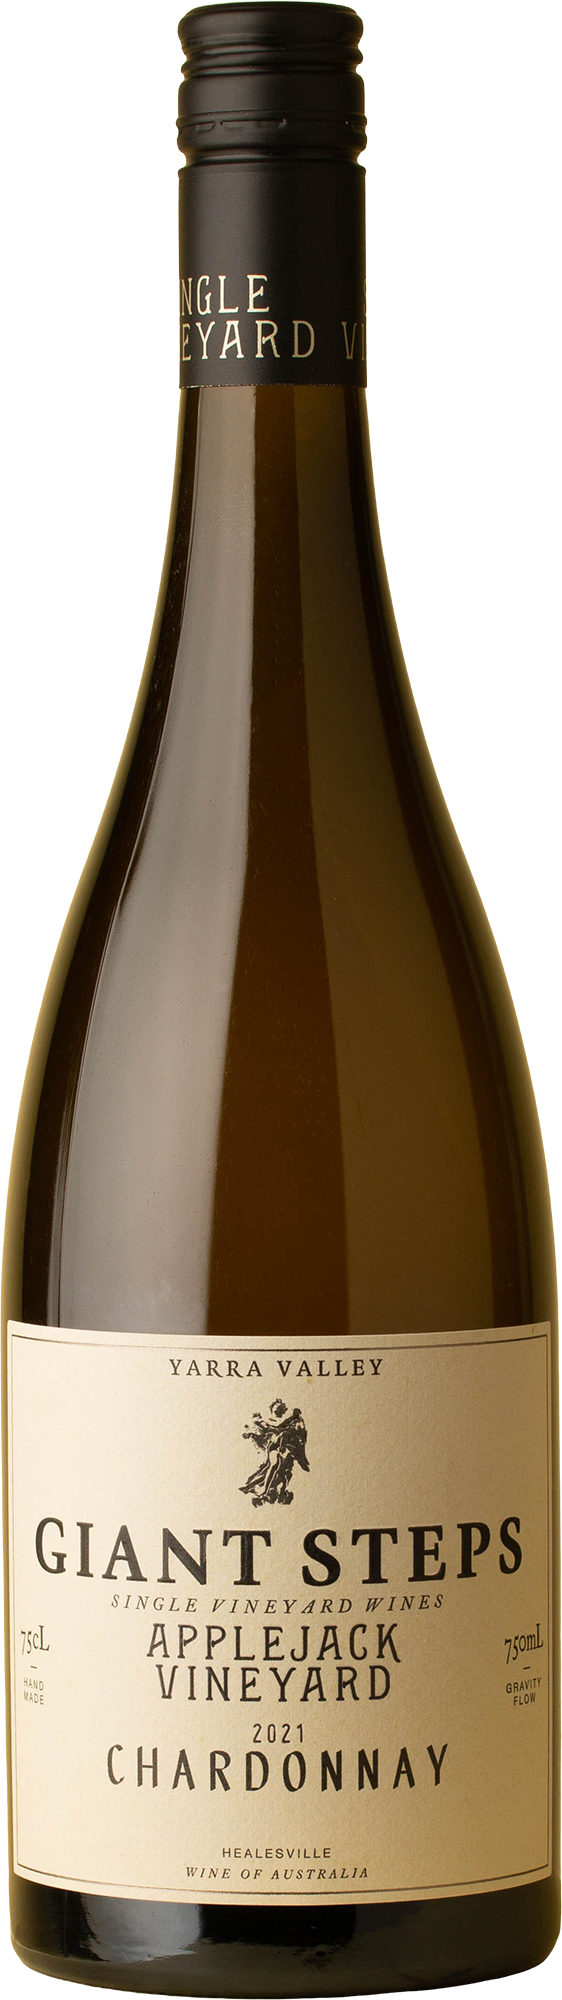 Giant Steps - Applejack Vineyard Chardonnay 2021 White Wine